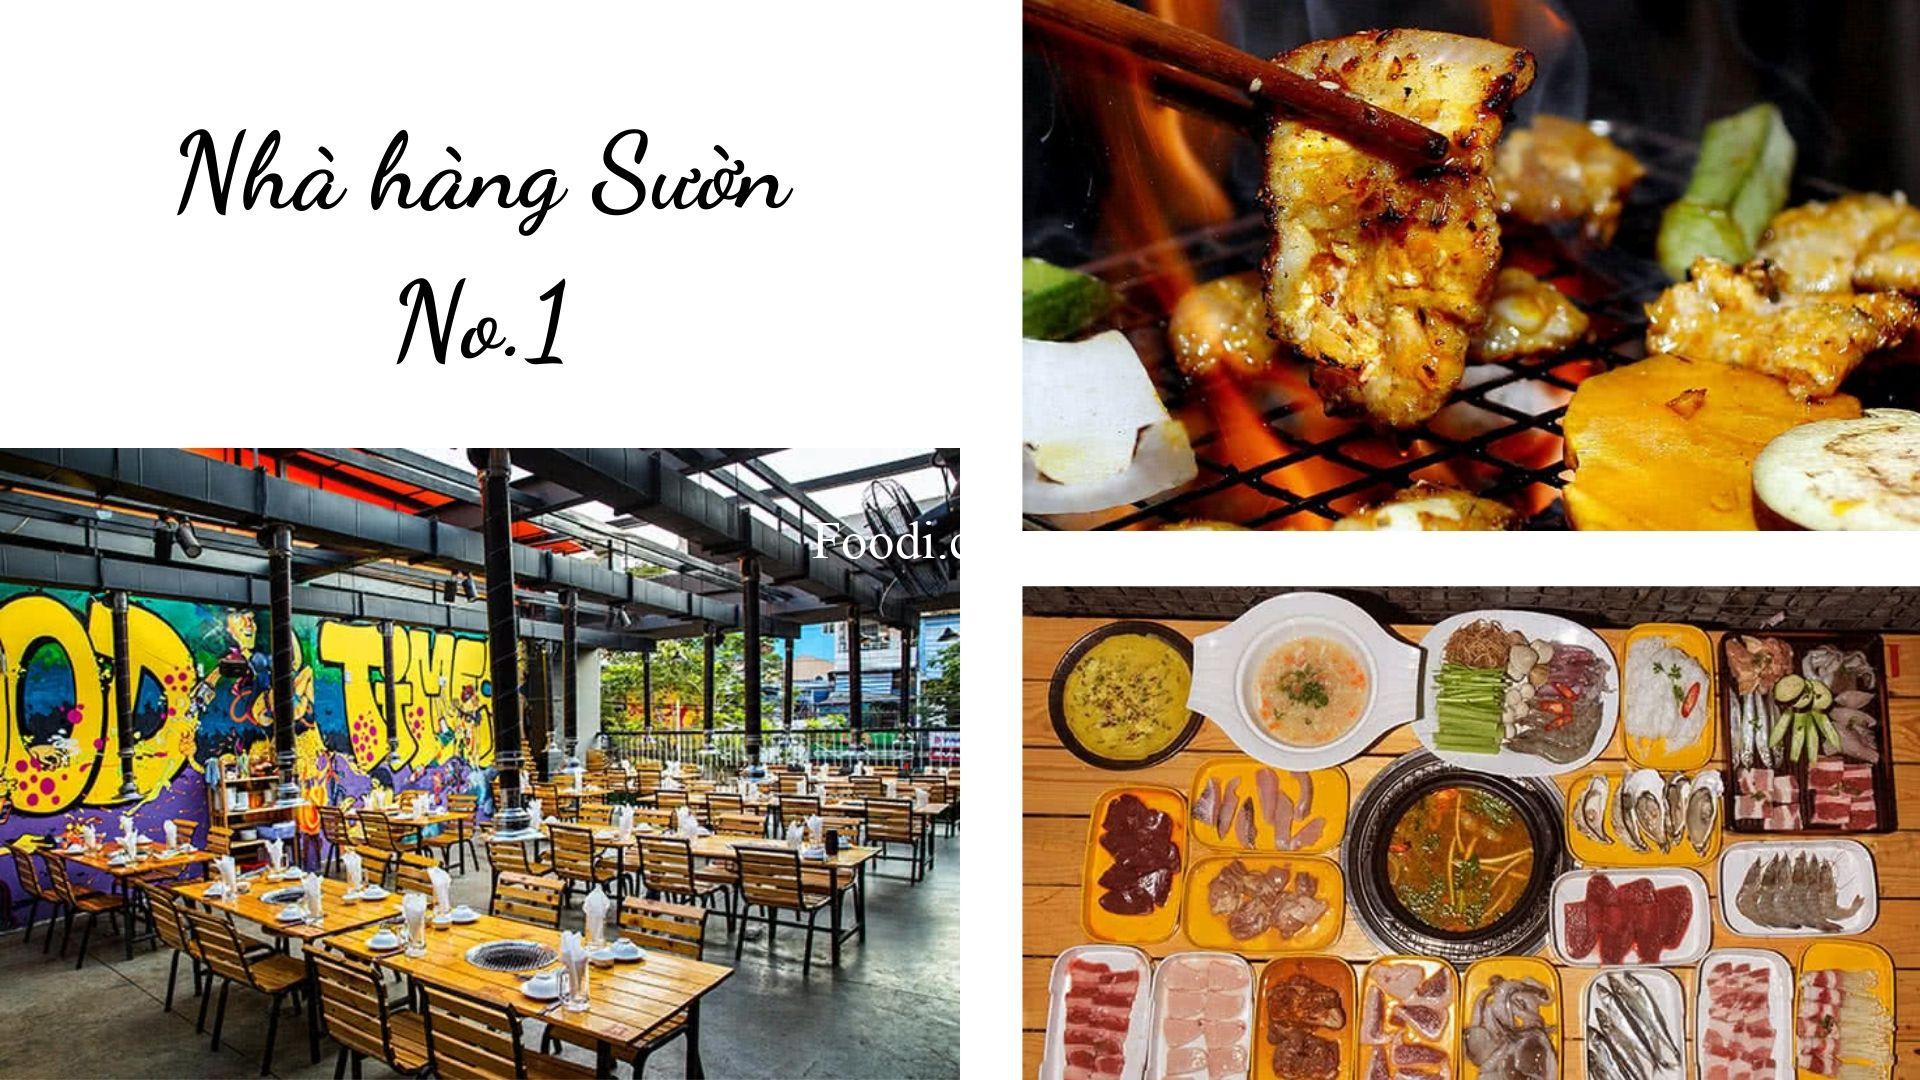 Top 20 Quán nướng gần đây ngon ở Sài Gòn - TPHCM đáng thử nhất